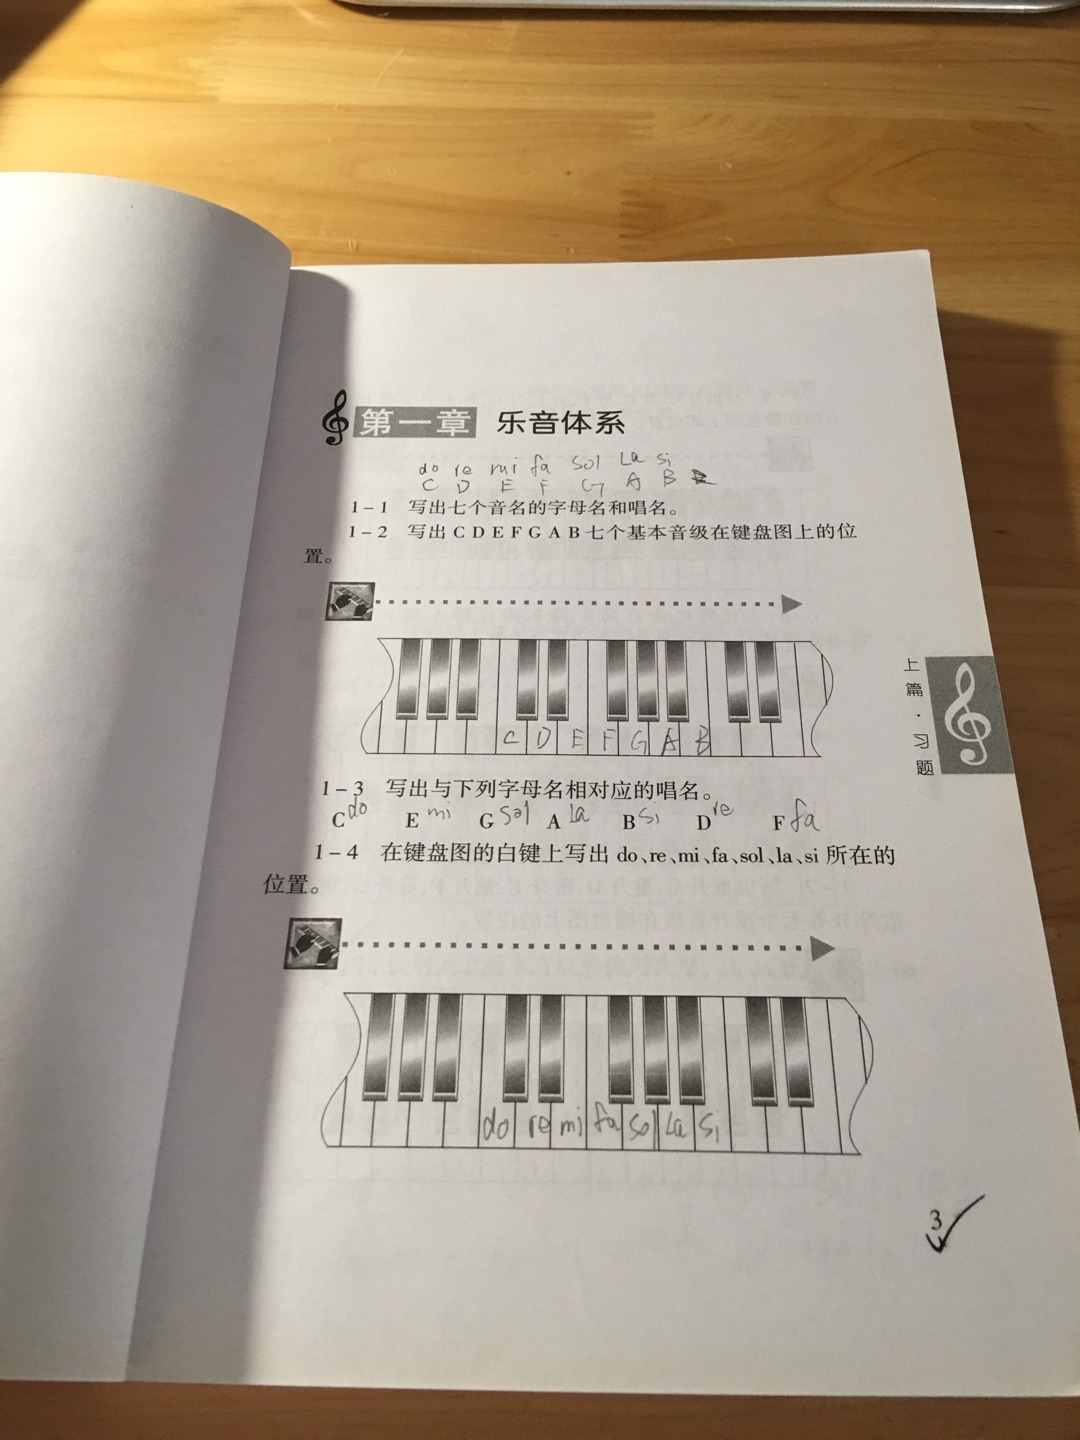 儿子学校的老师推荐使用音乐教材，一下子买了李重光的一系列的音乐基本理论书籍，通过学习增长知识